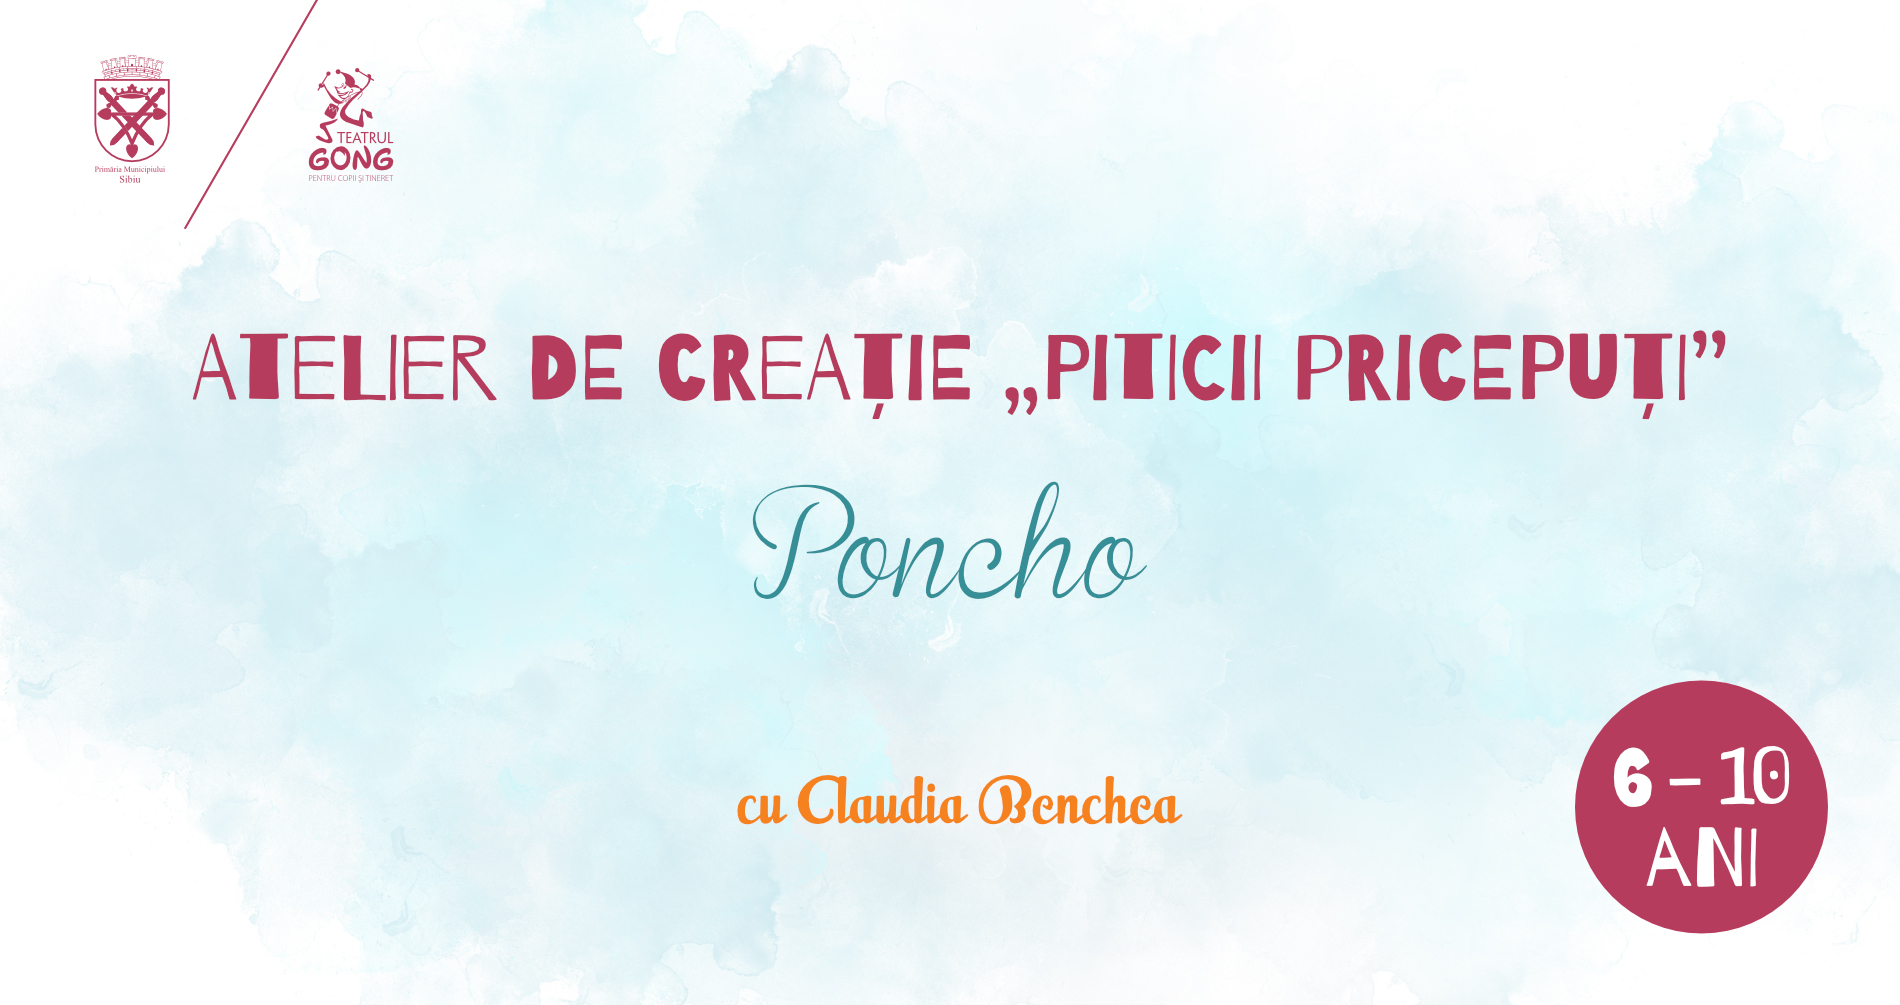 Atelier de Creație „Piticii pricepuți” – Poncho